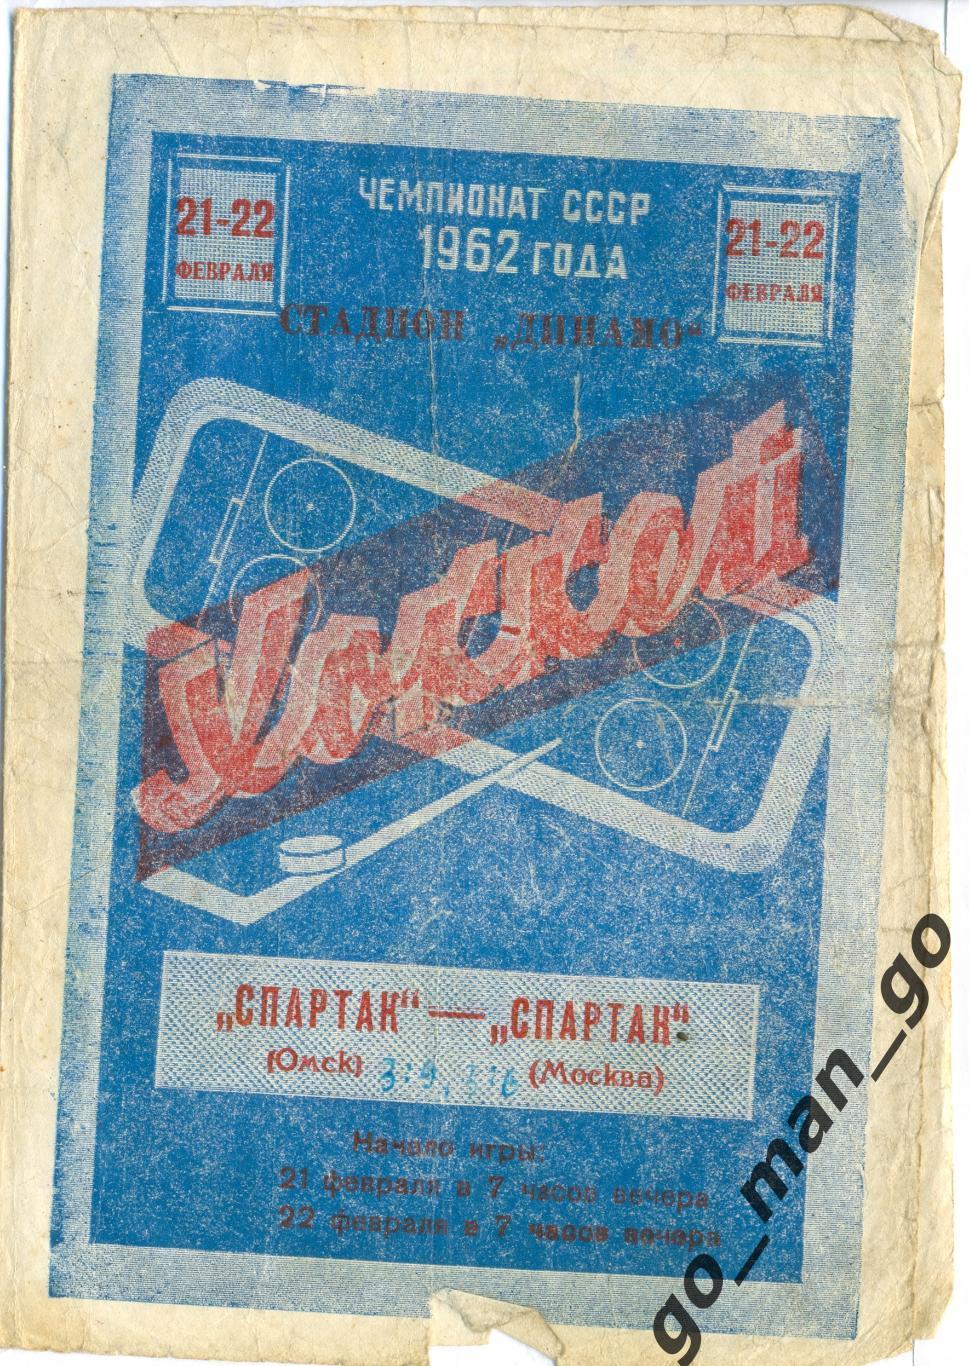 СПАРТАК Омск – СПАРТАК Москва 21-22.02.1962.